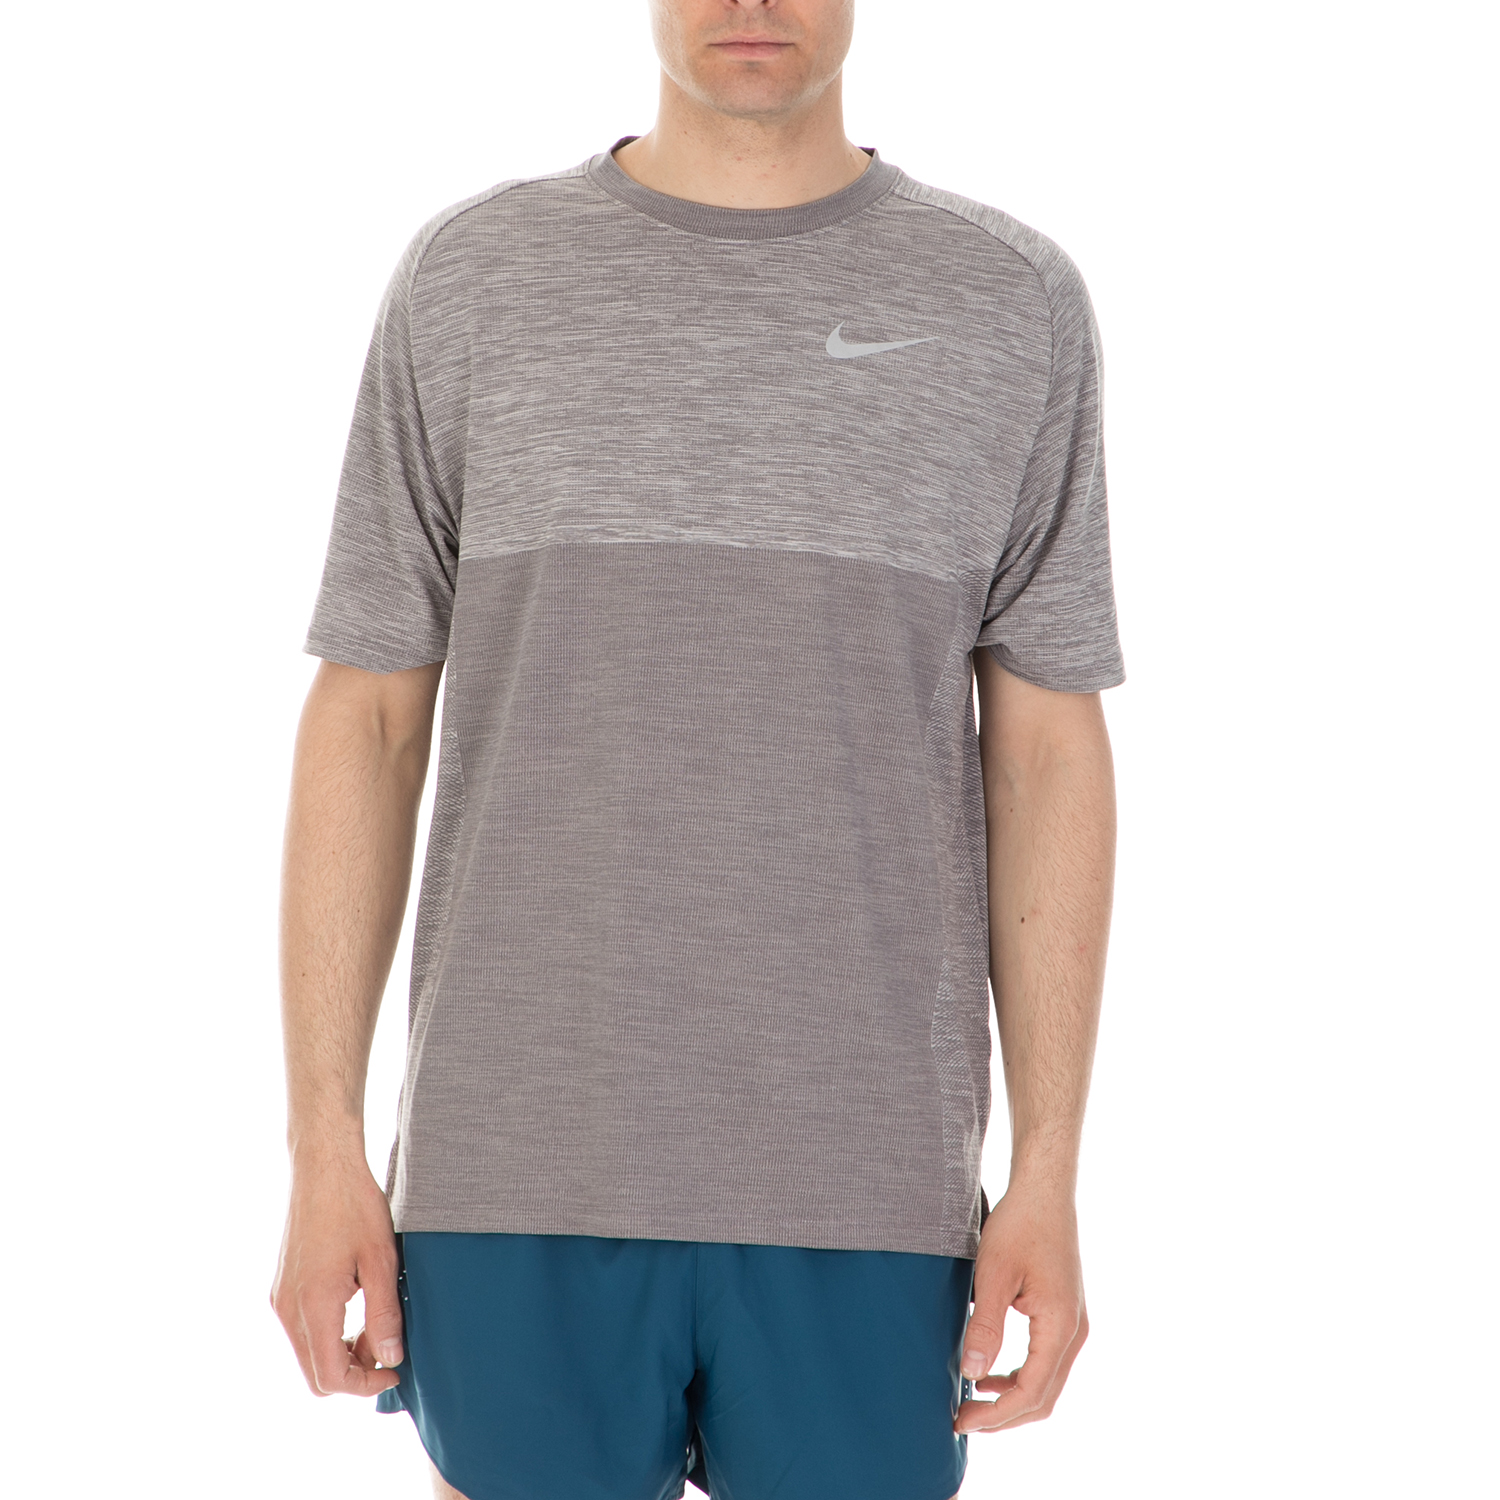 Ανδρικά/Ρούχα/Αθλητικά/T-shirt NIKE - Ανδρική κοντομάνικη μπλούζα Nike DRY MEDALIST TOP γκρι